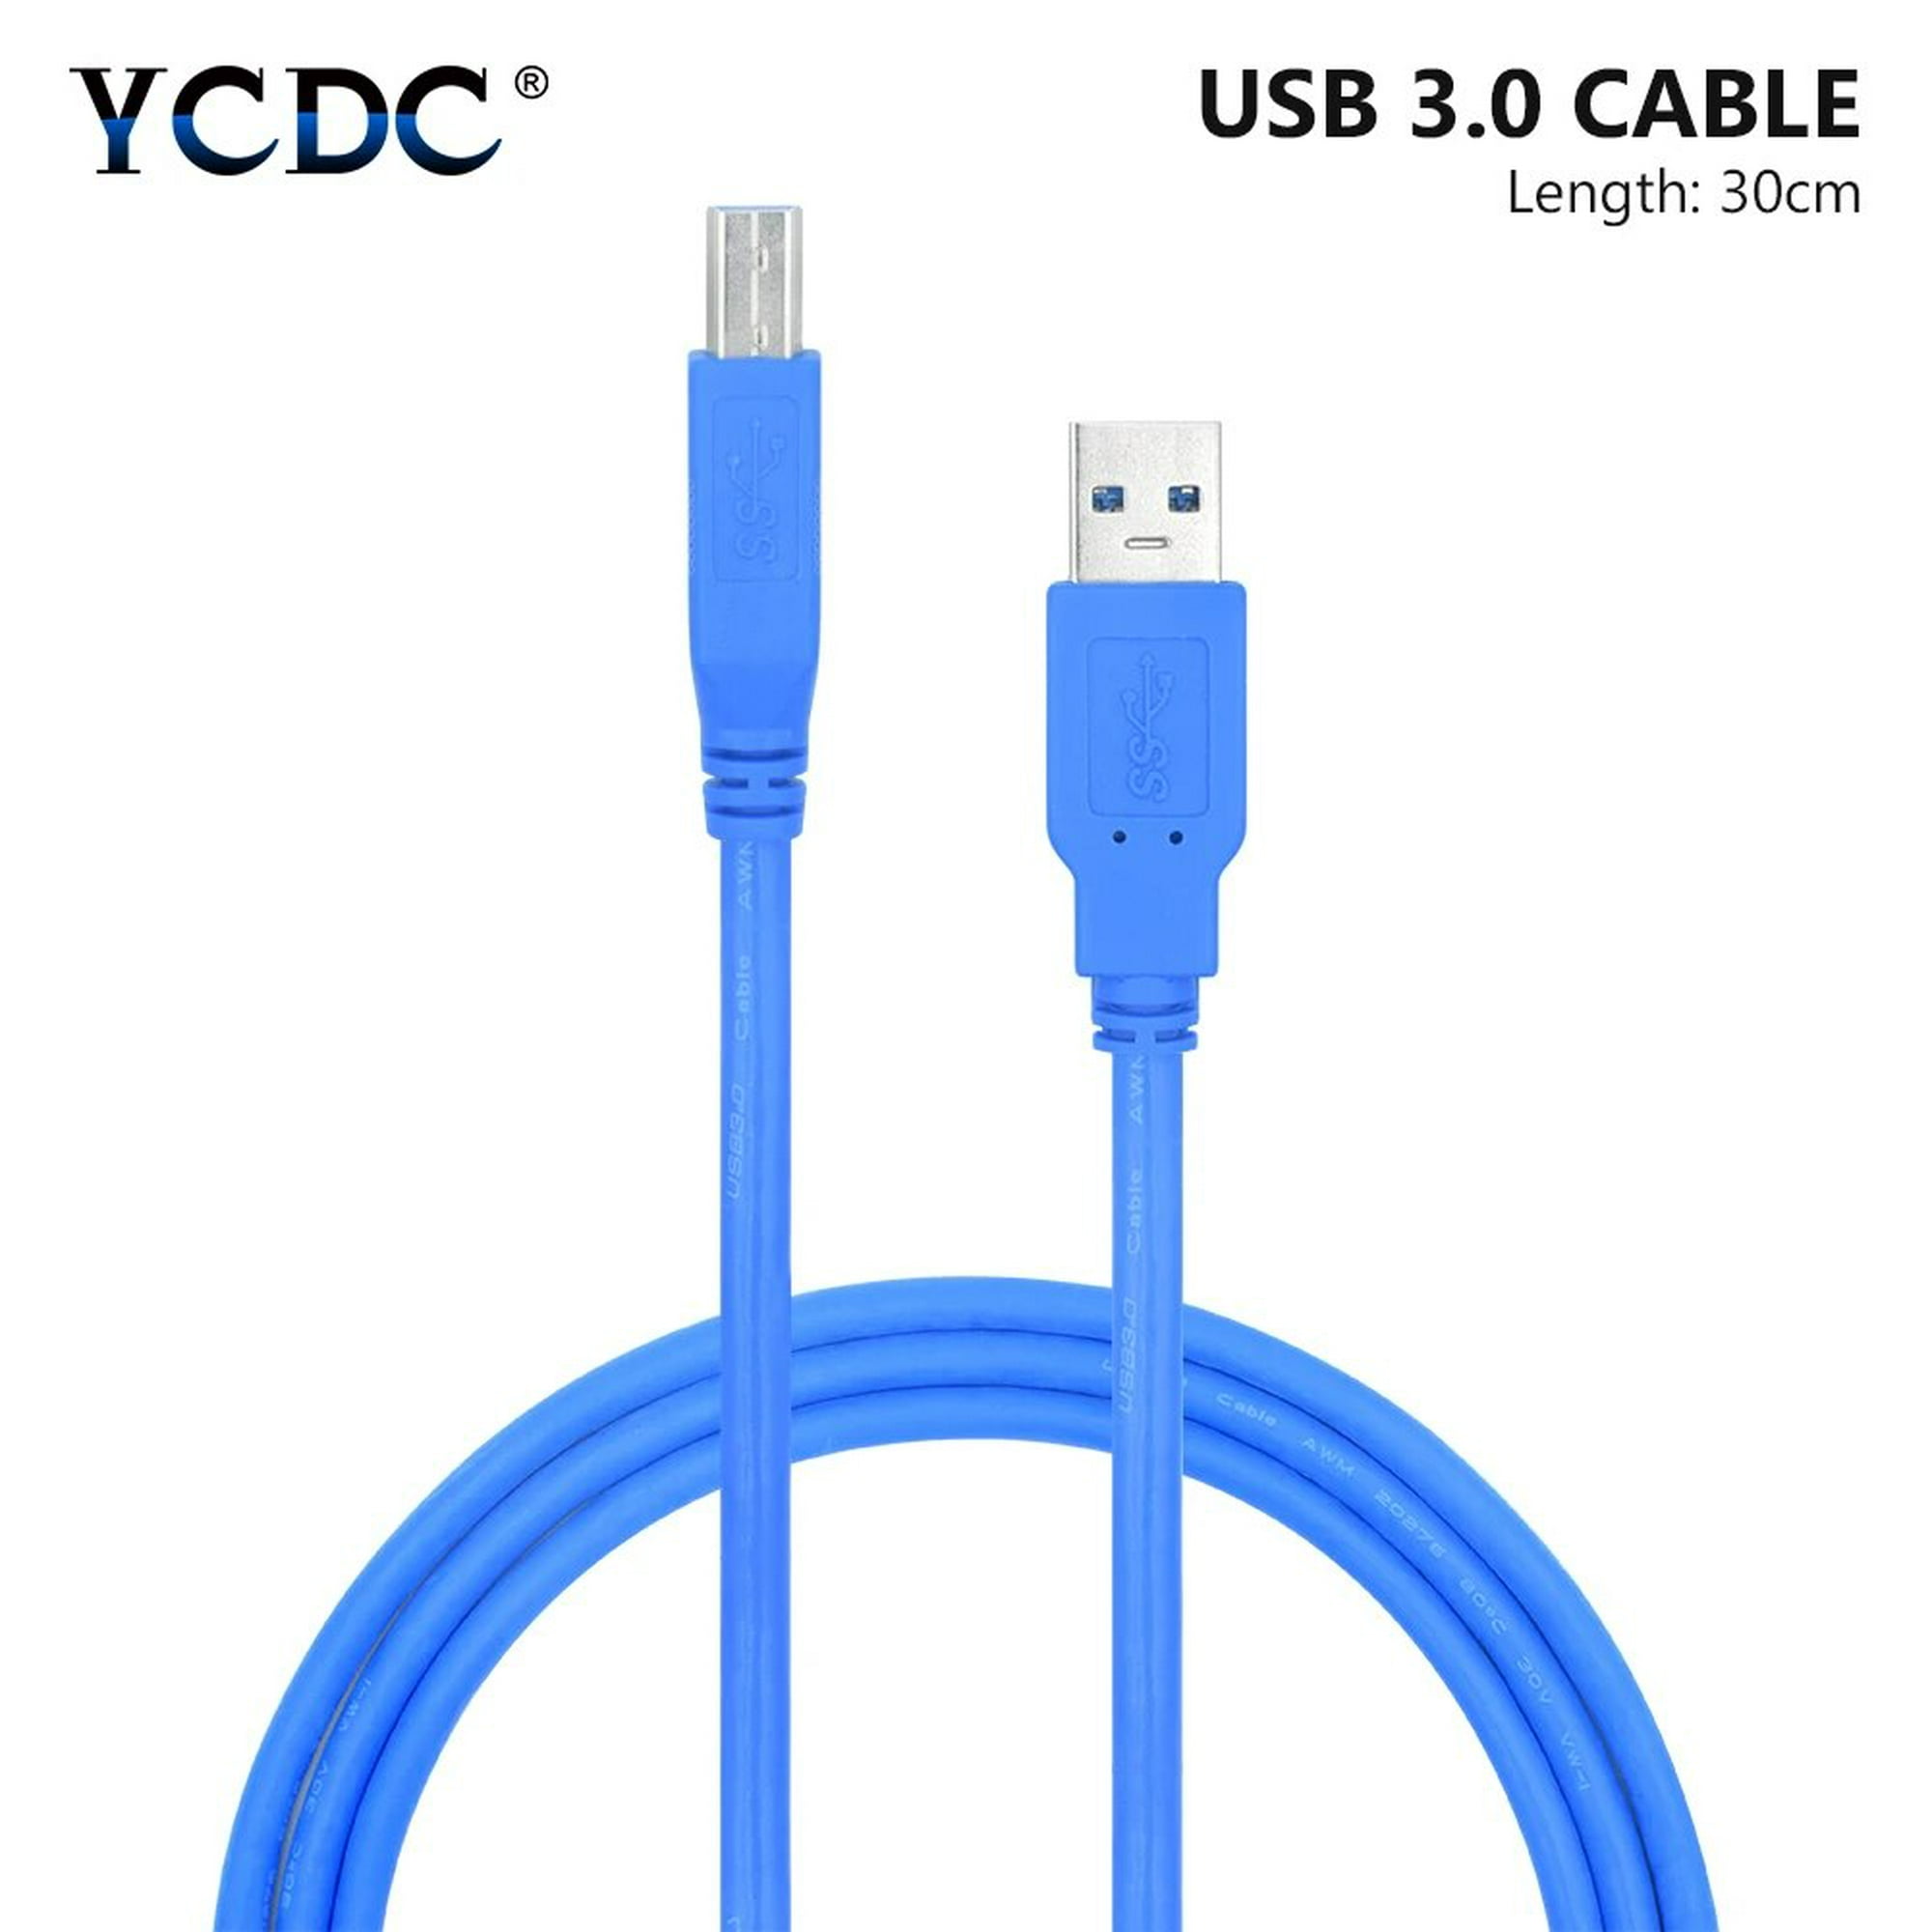 Cable para Impresora USB AM/BM 5m